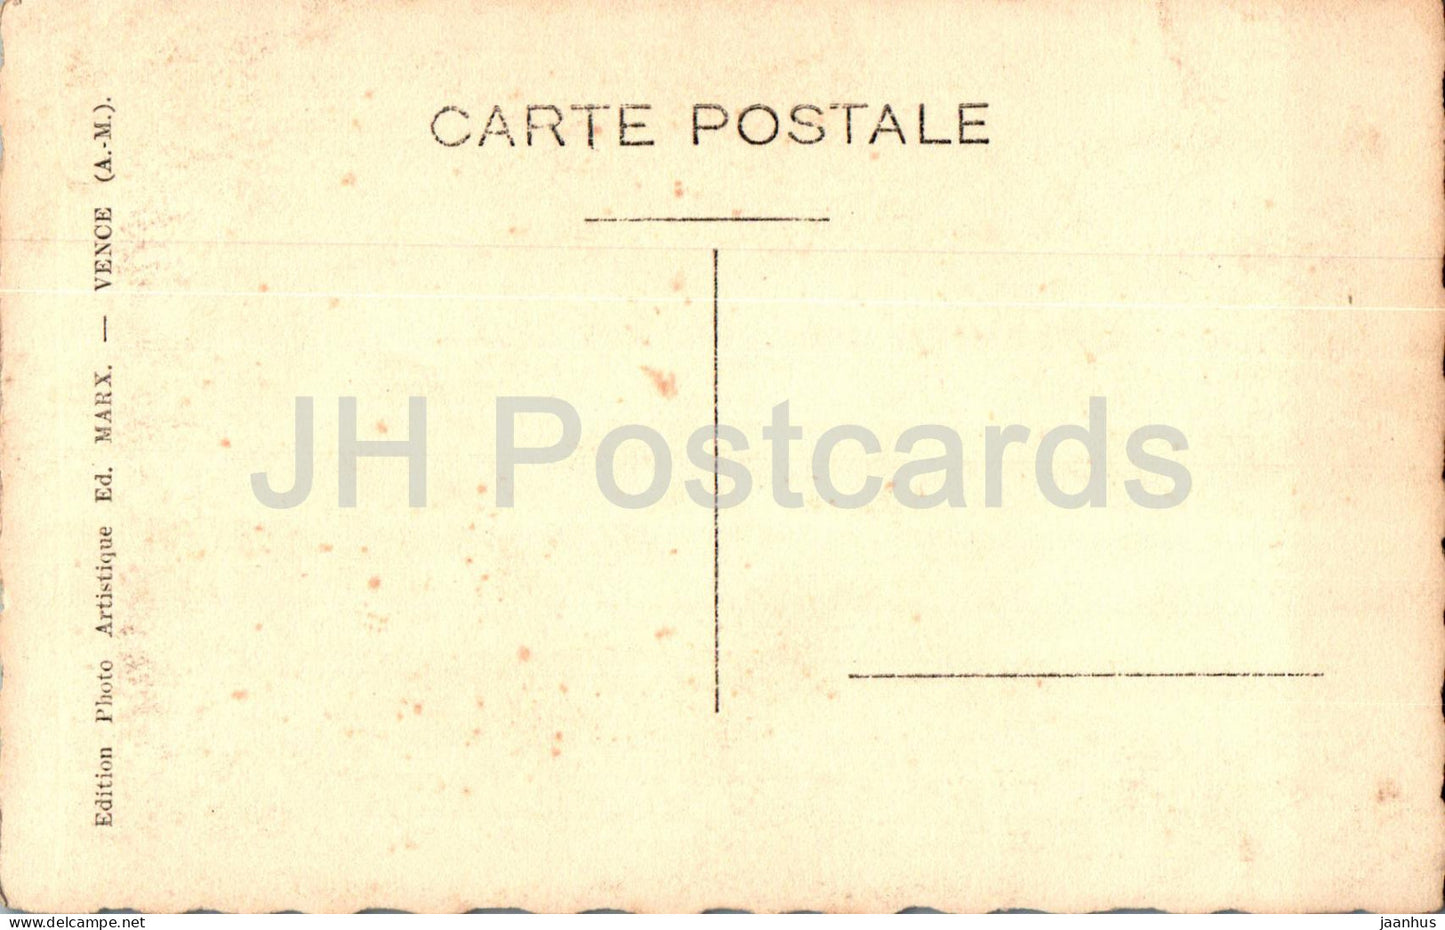 Vence - streets - 1 - Ed Marx - old postcard - France - unused